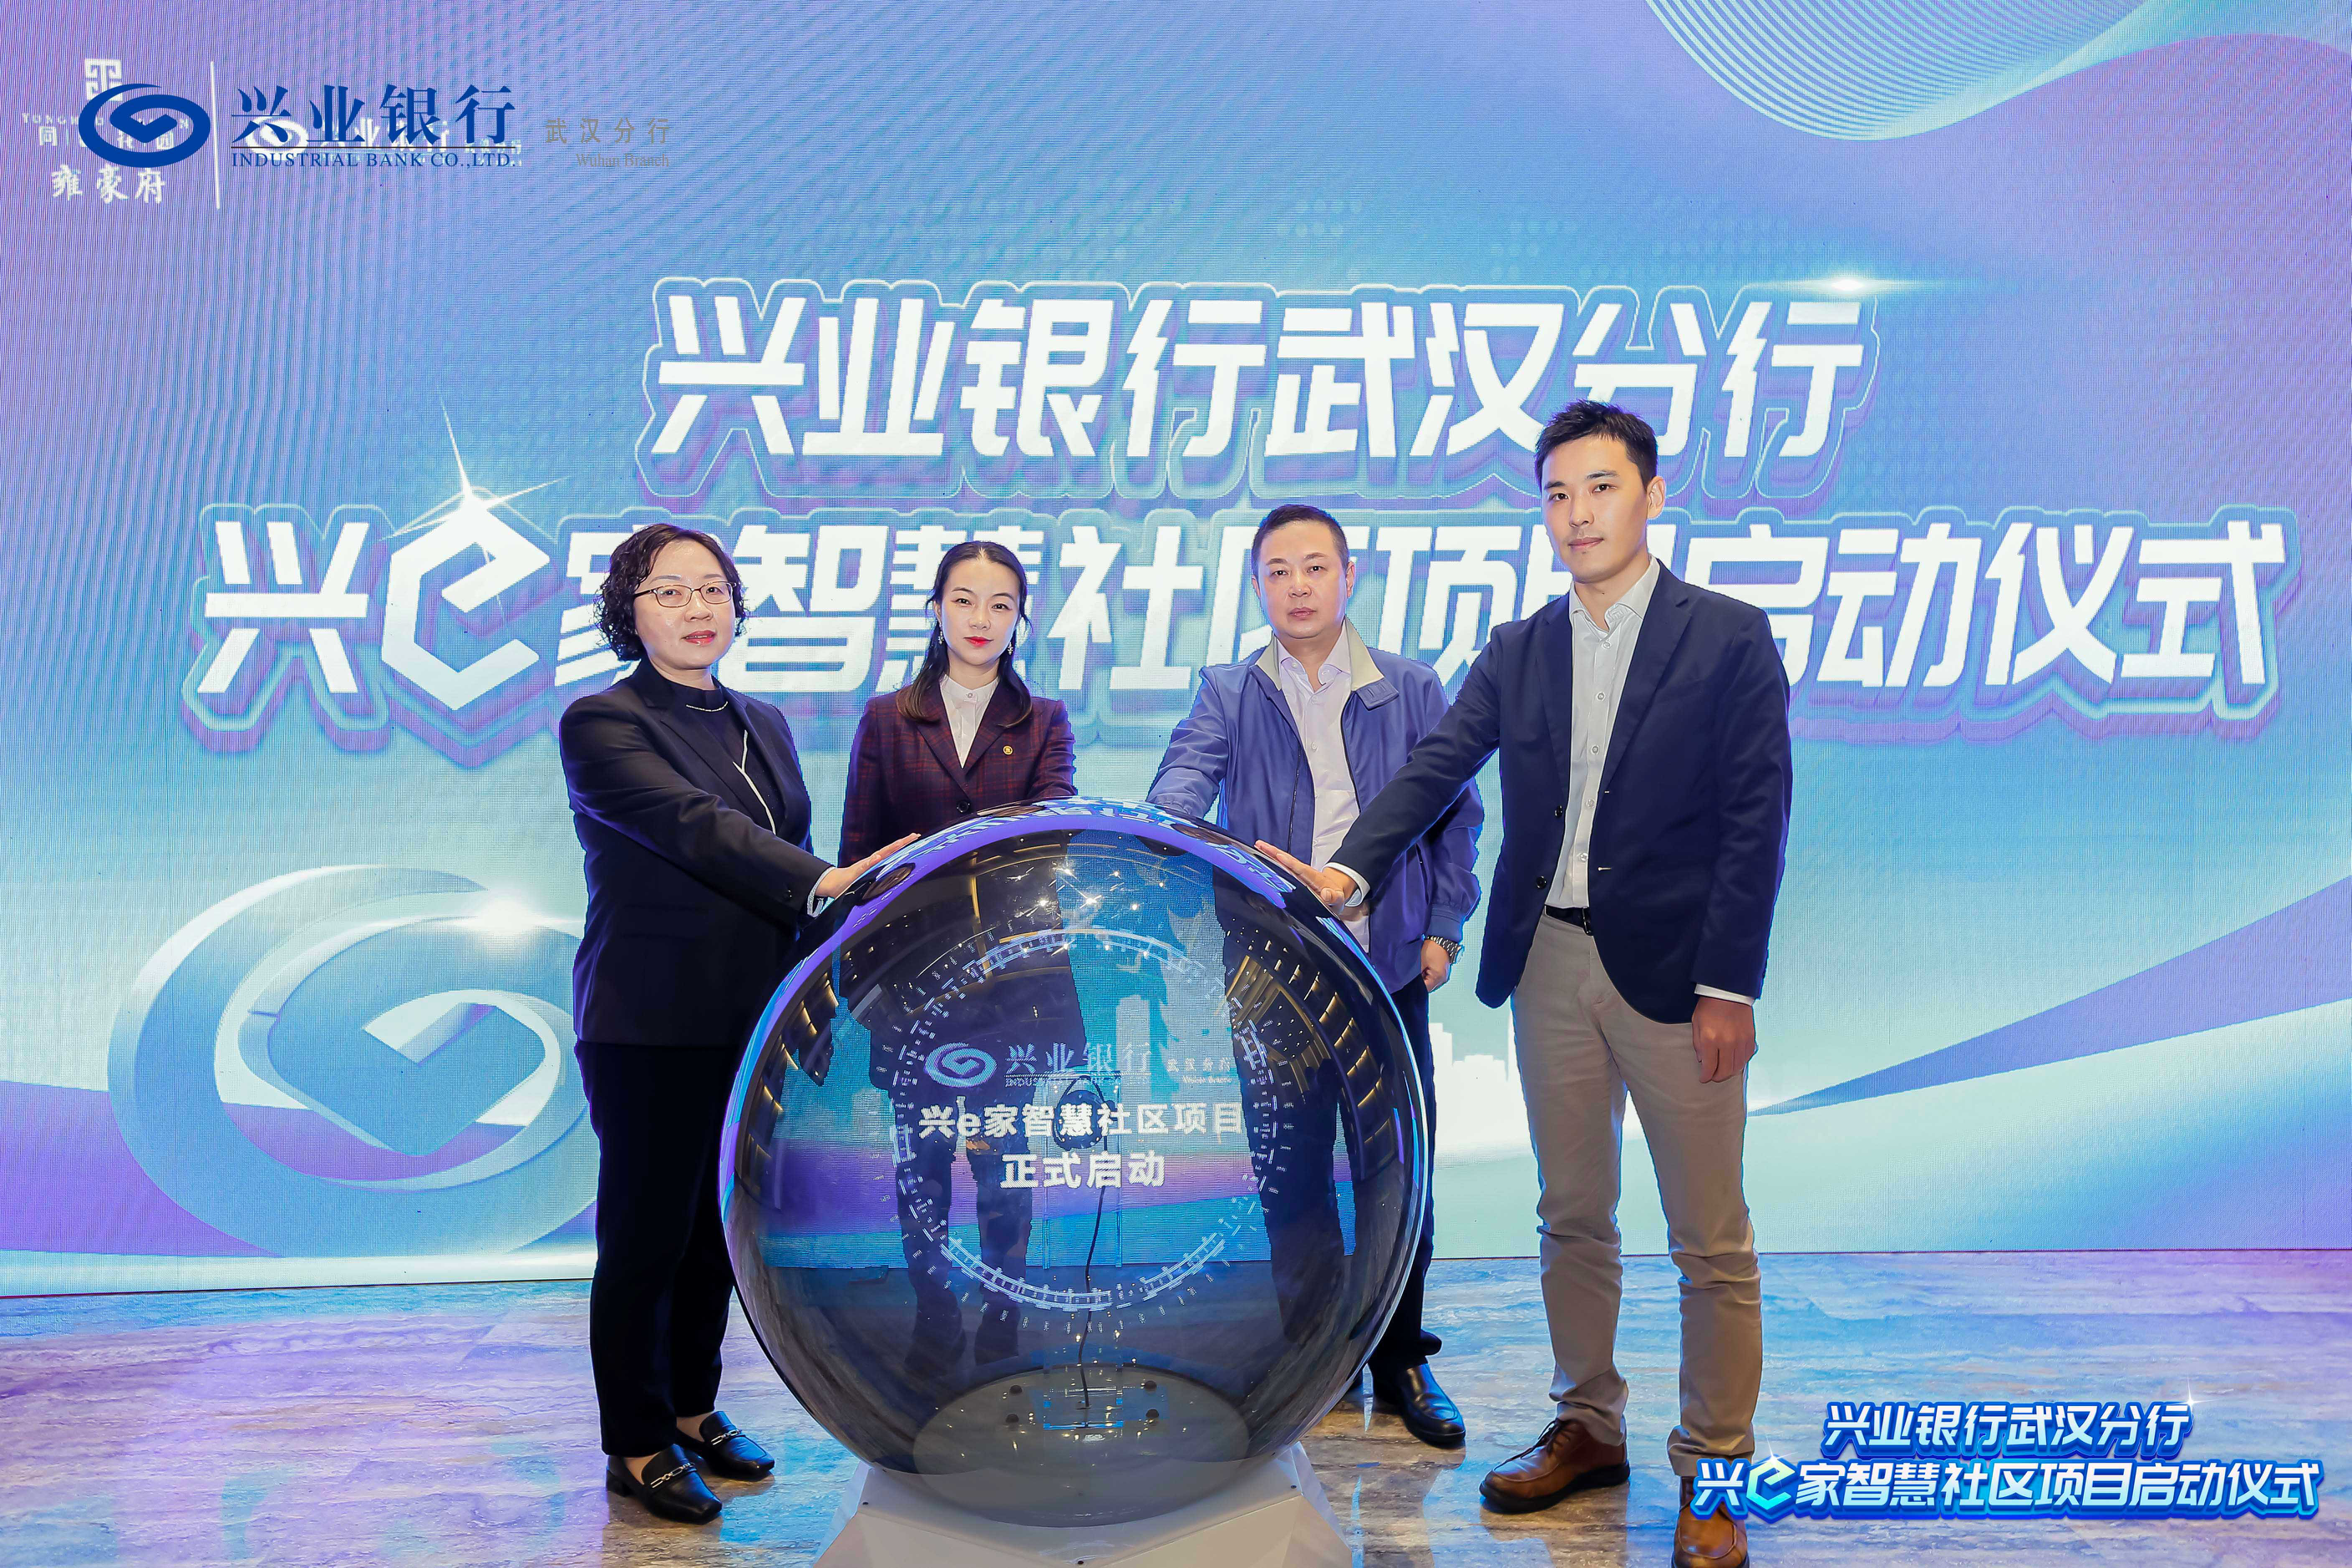 兴业银行首家智慧社区项目在汉正式启动